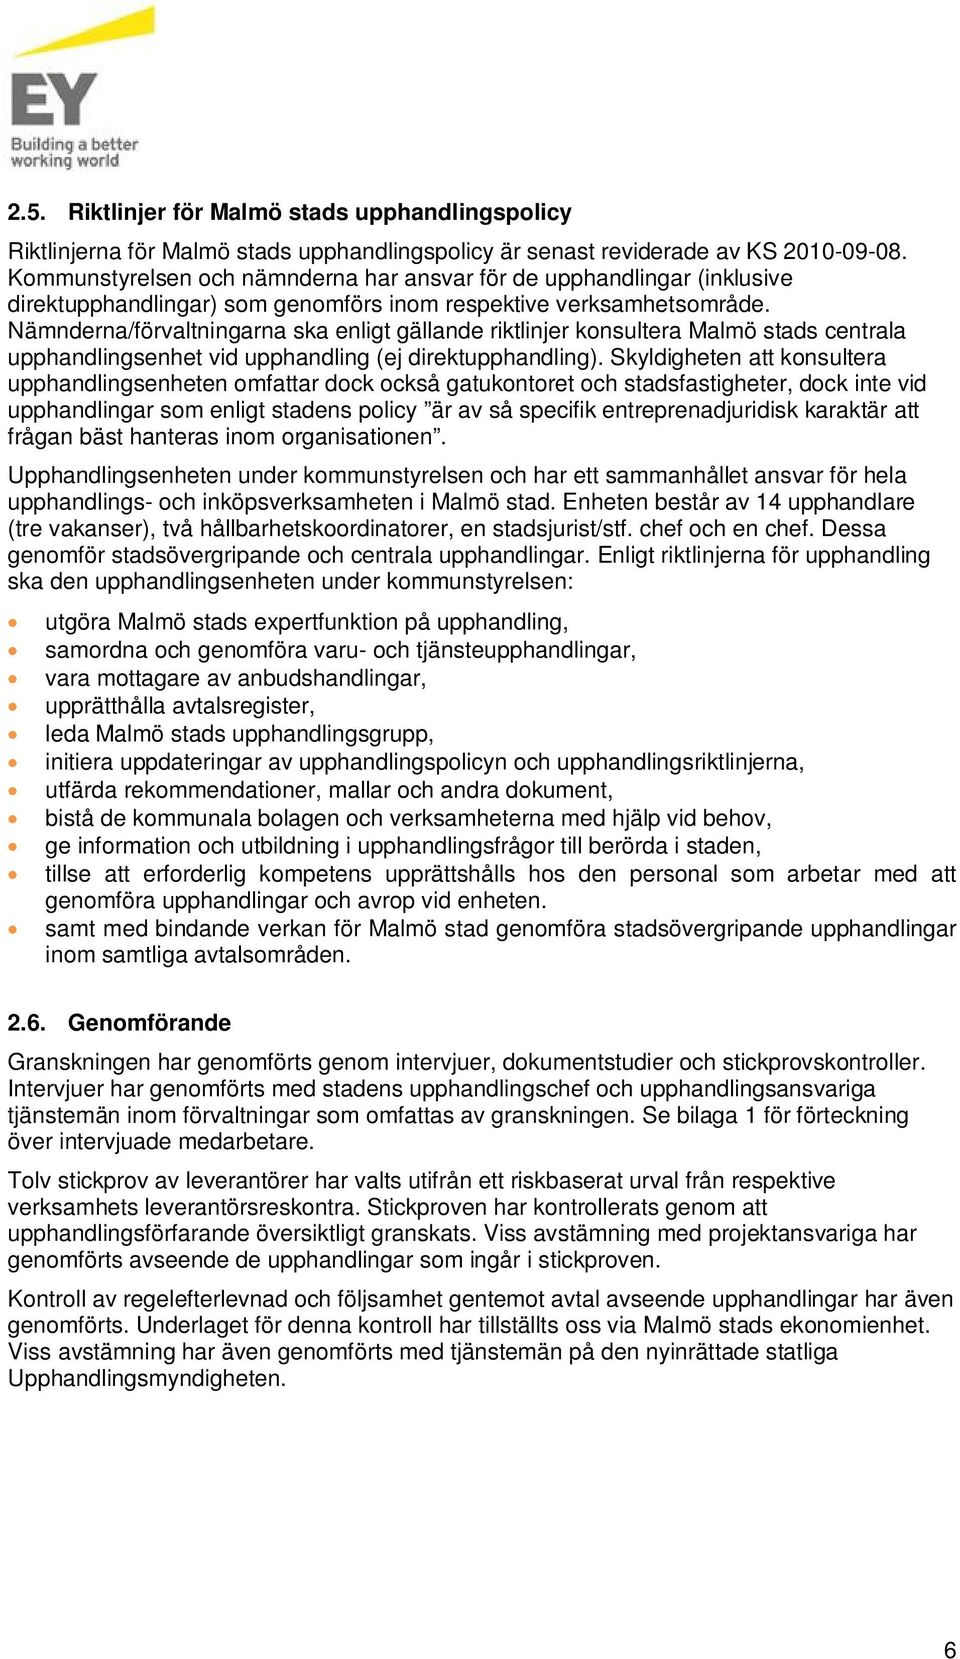 Nämnderna/förvaltningarna ska enligt gällande riktlinjer konsultera Malmö stads centrala upphandlingsenhet vid upphandling (ej direktupphandling).